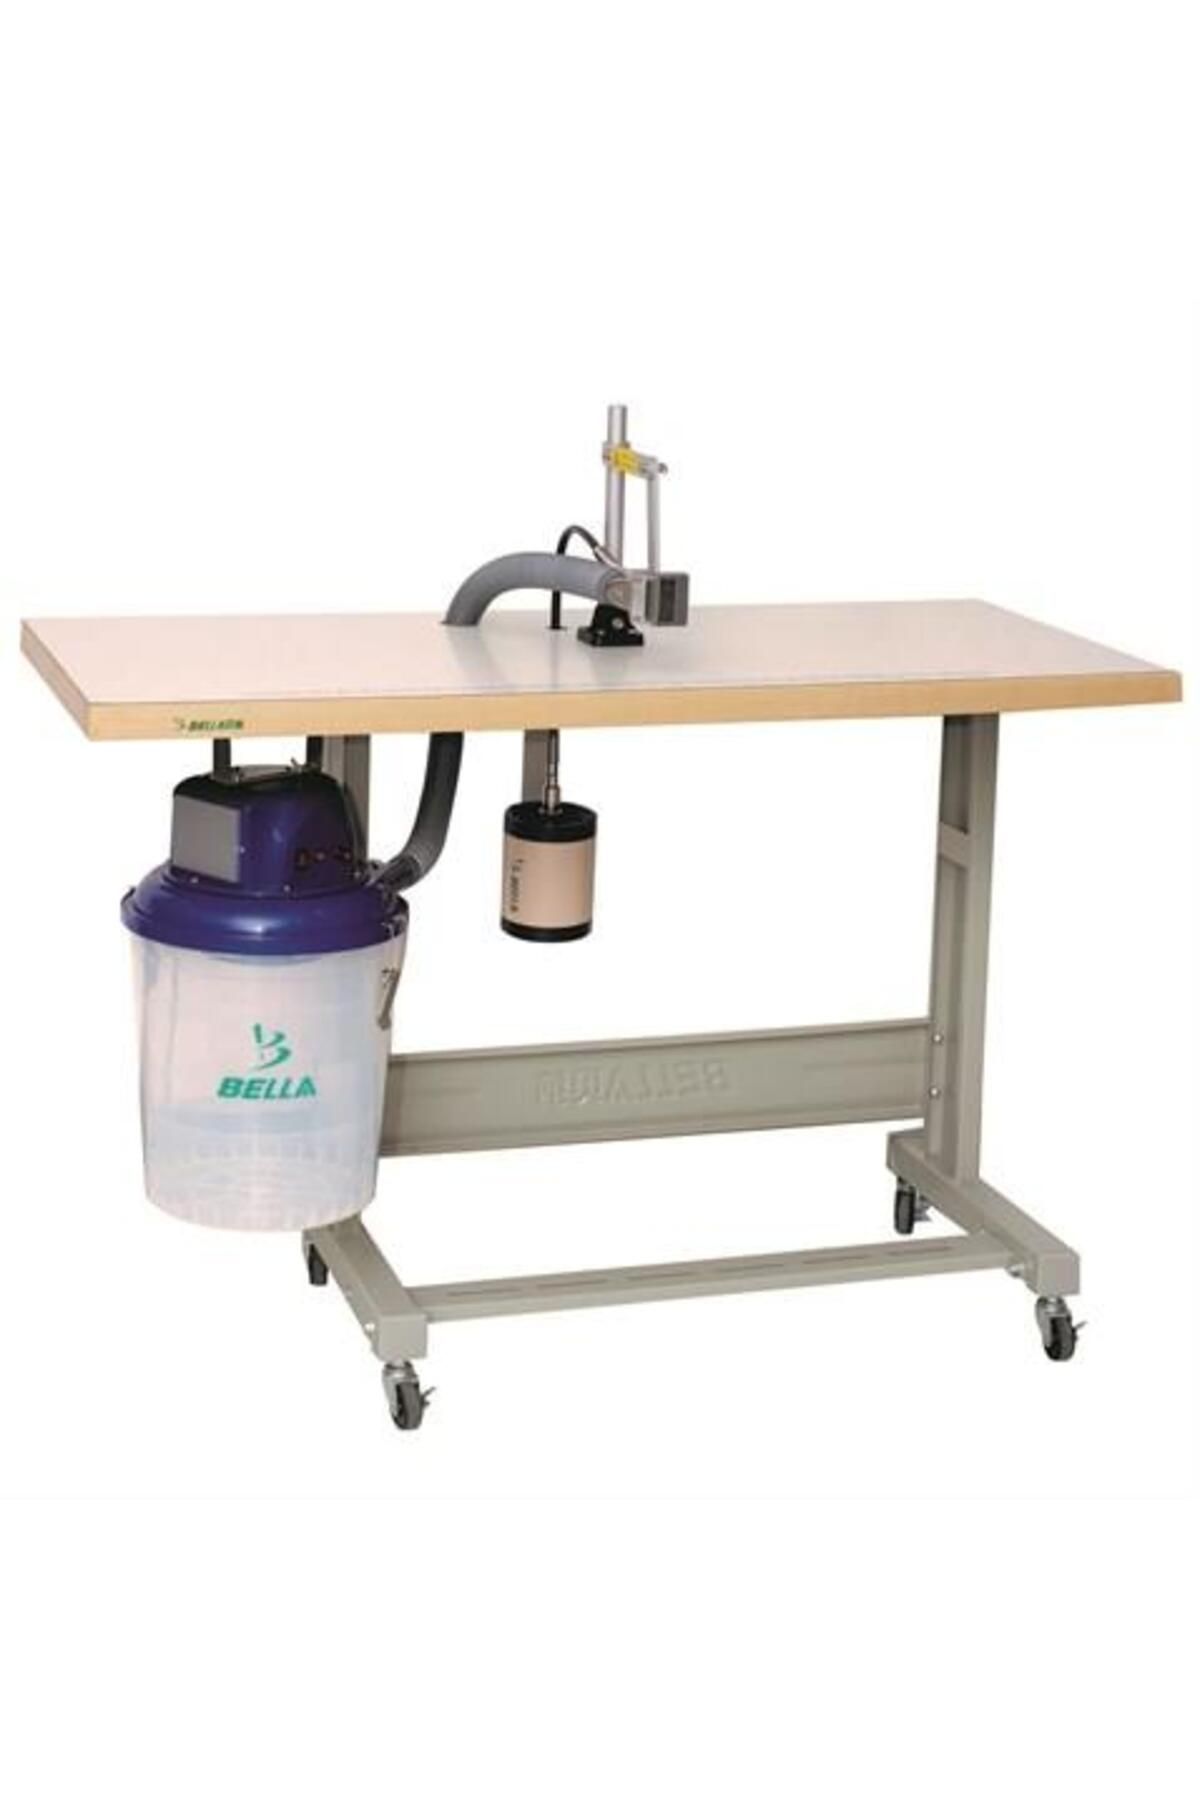 Bella Masalı İplik Temizleme Makinesi (Sabit Kafa) / T622C